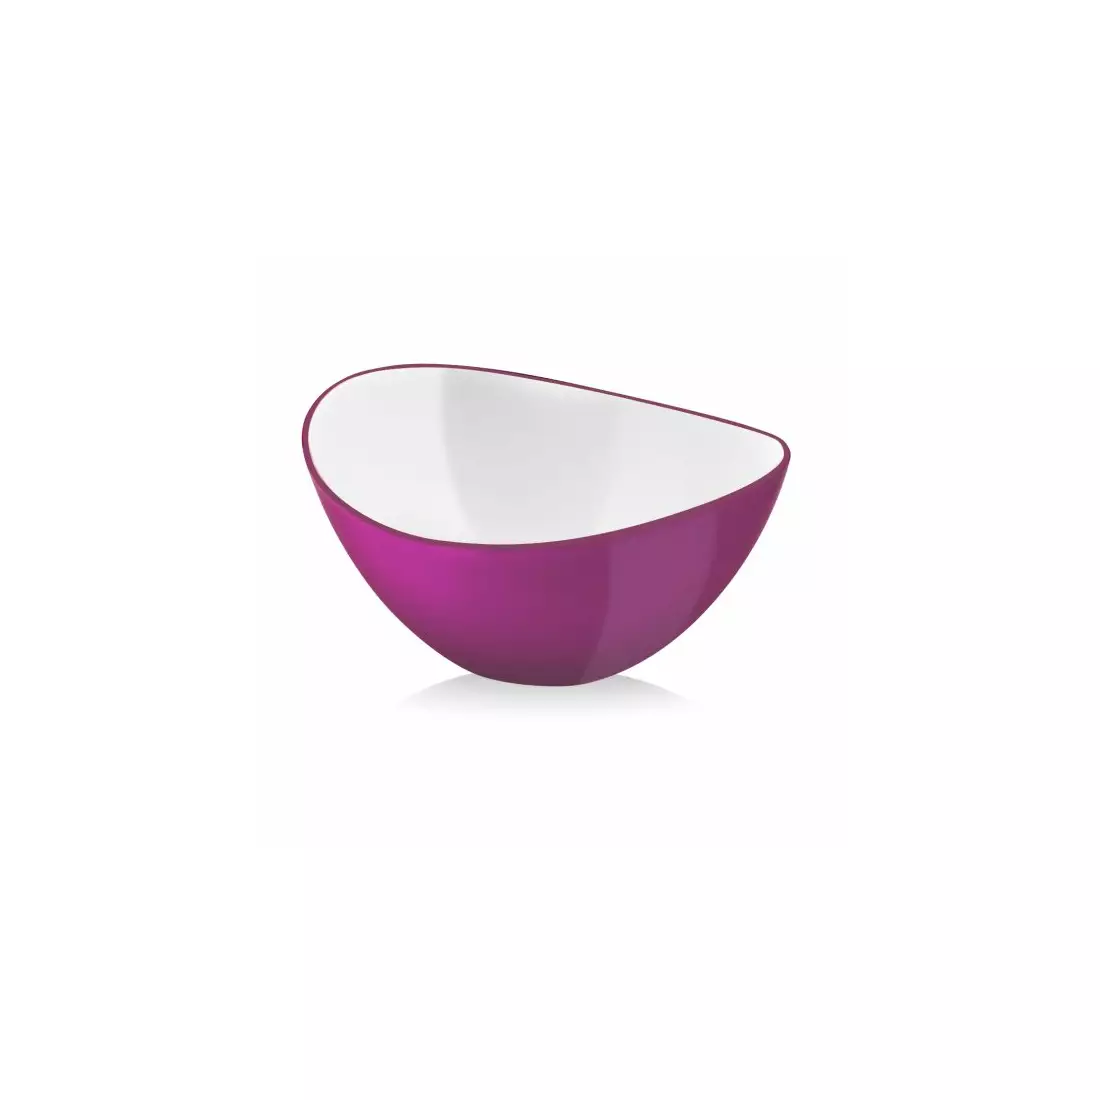 VIALLI DESIGN LIVIO oval bowl 16 cm fuchsia